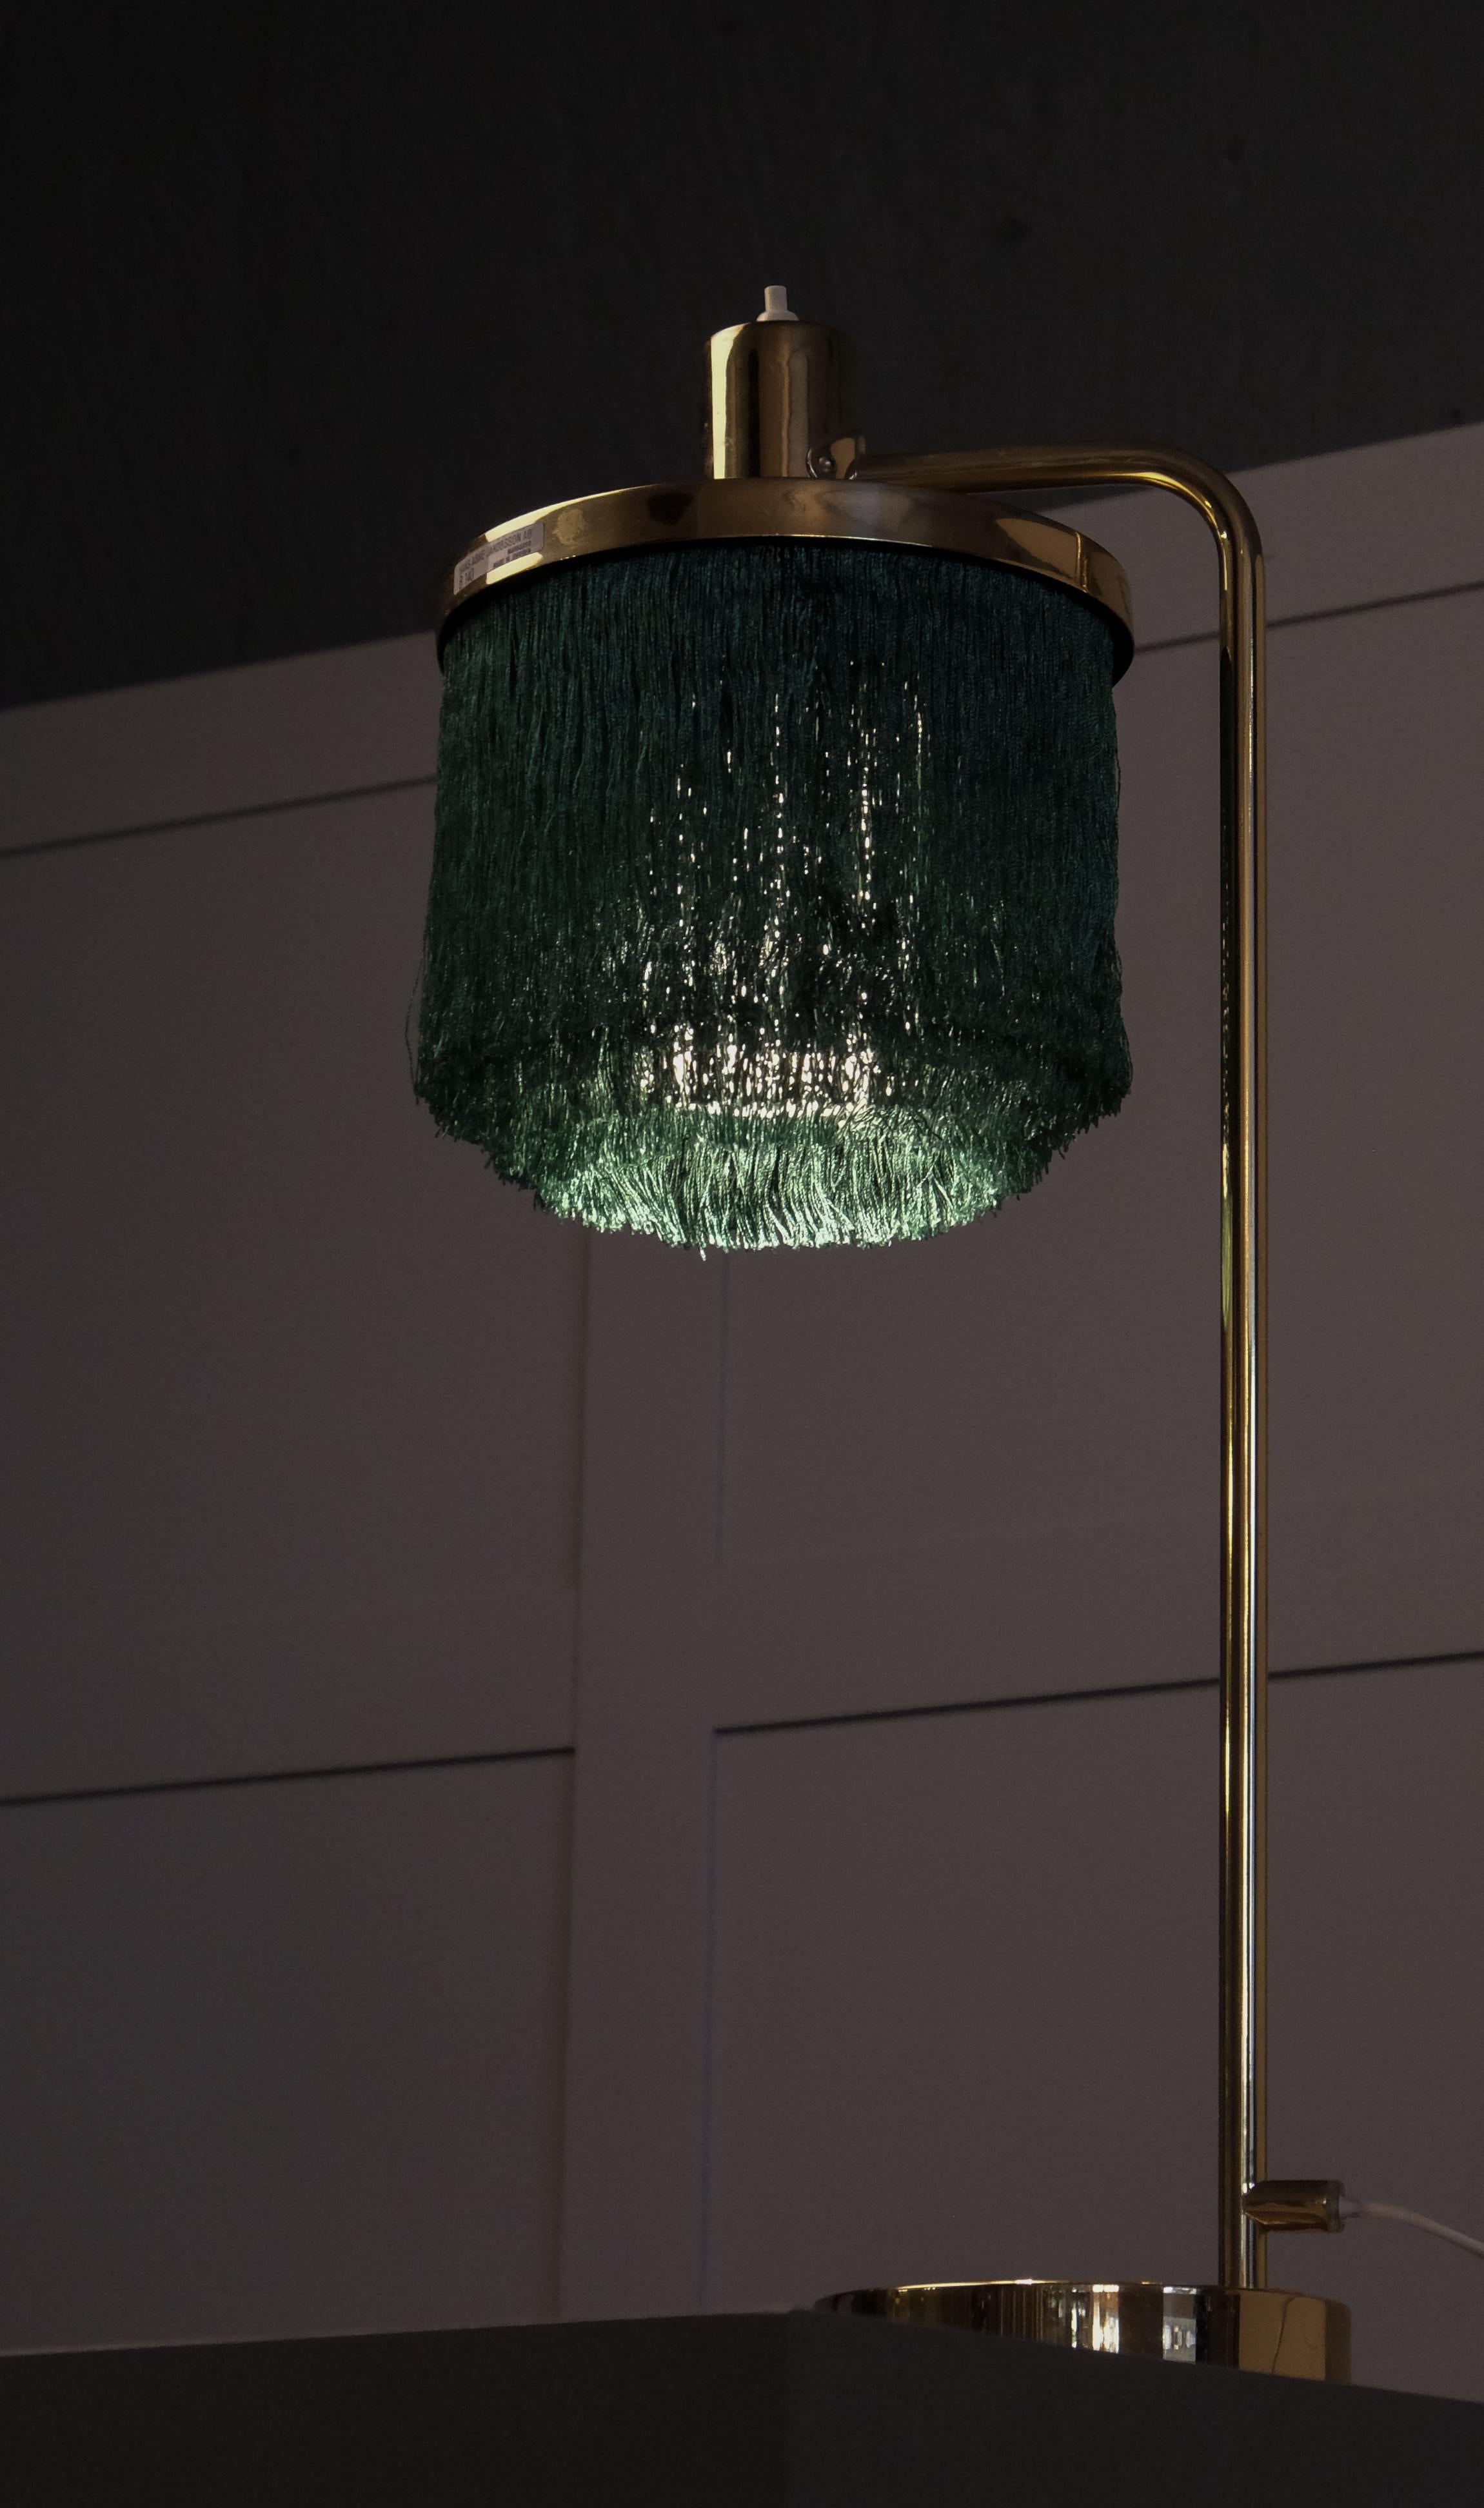 Seltene Tischlampe mit grünen Fransen, hergestellt von Hans-Agne Jakobsson in Markaryd, Schweden, 1960er Jahre. 
- Modell B140
- Neue Verkabelung
- 2 Tischlampen verfügbar, der angegebene Preis ist für eine einzelne Lampe.